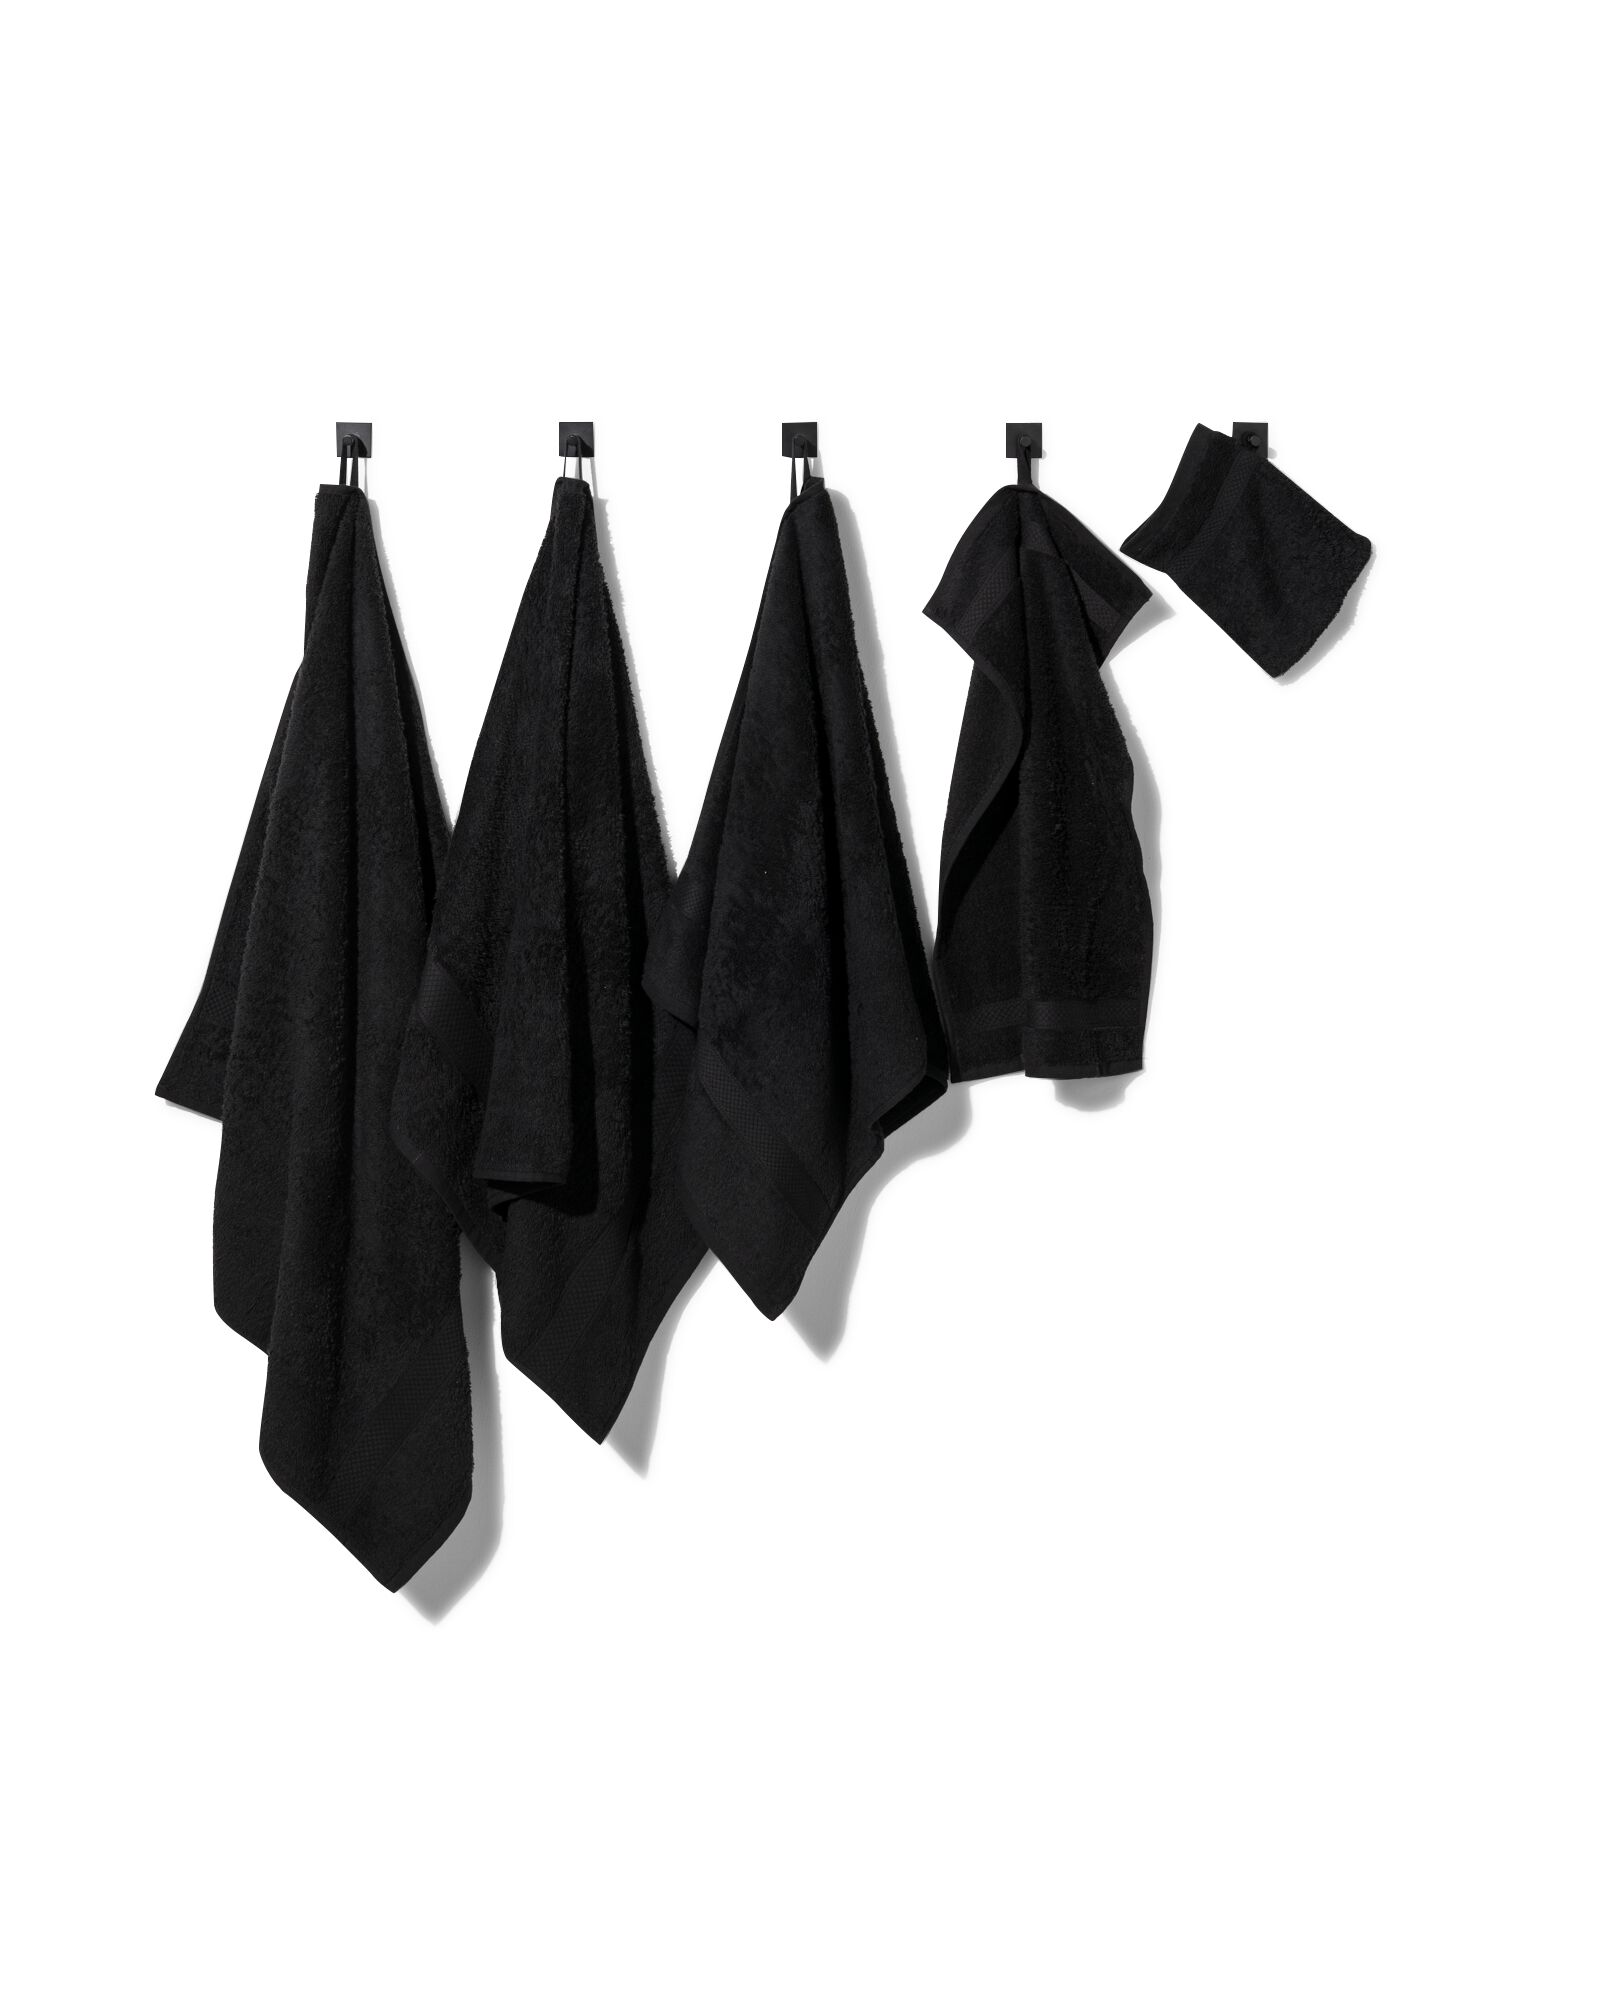 petite serviette 33x50 qualité épaisse noir noir petite serviette - 5210134 - HEMA